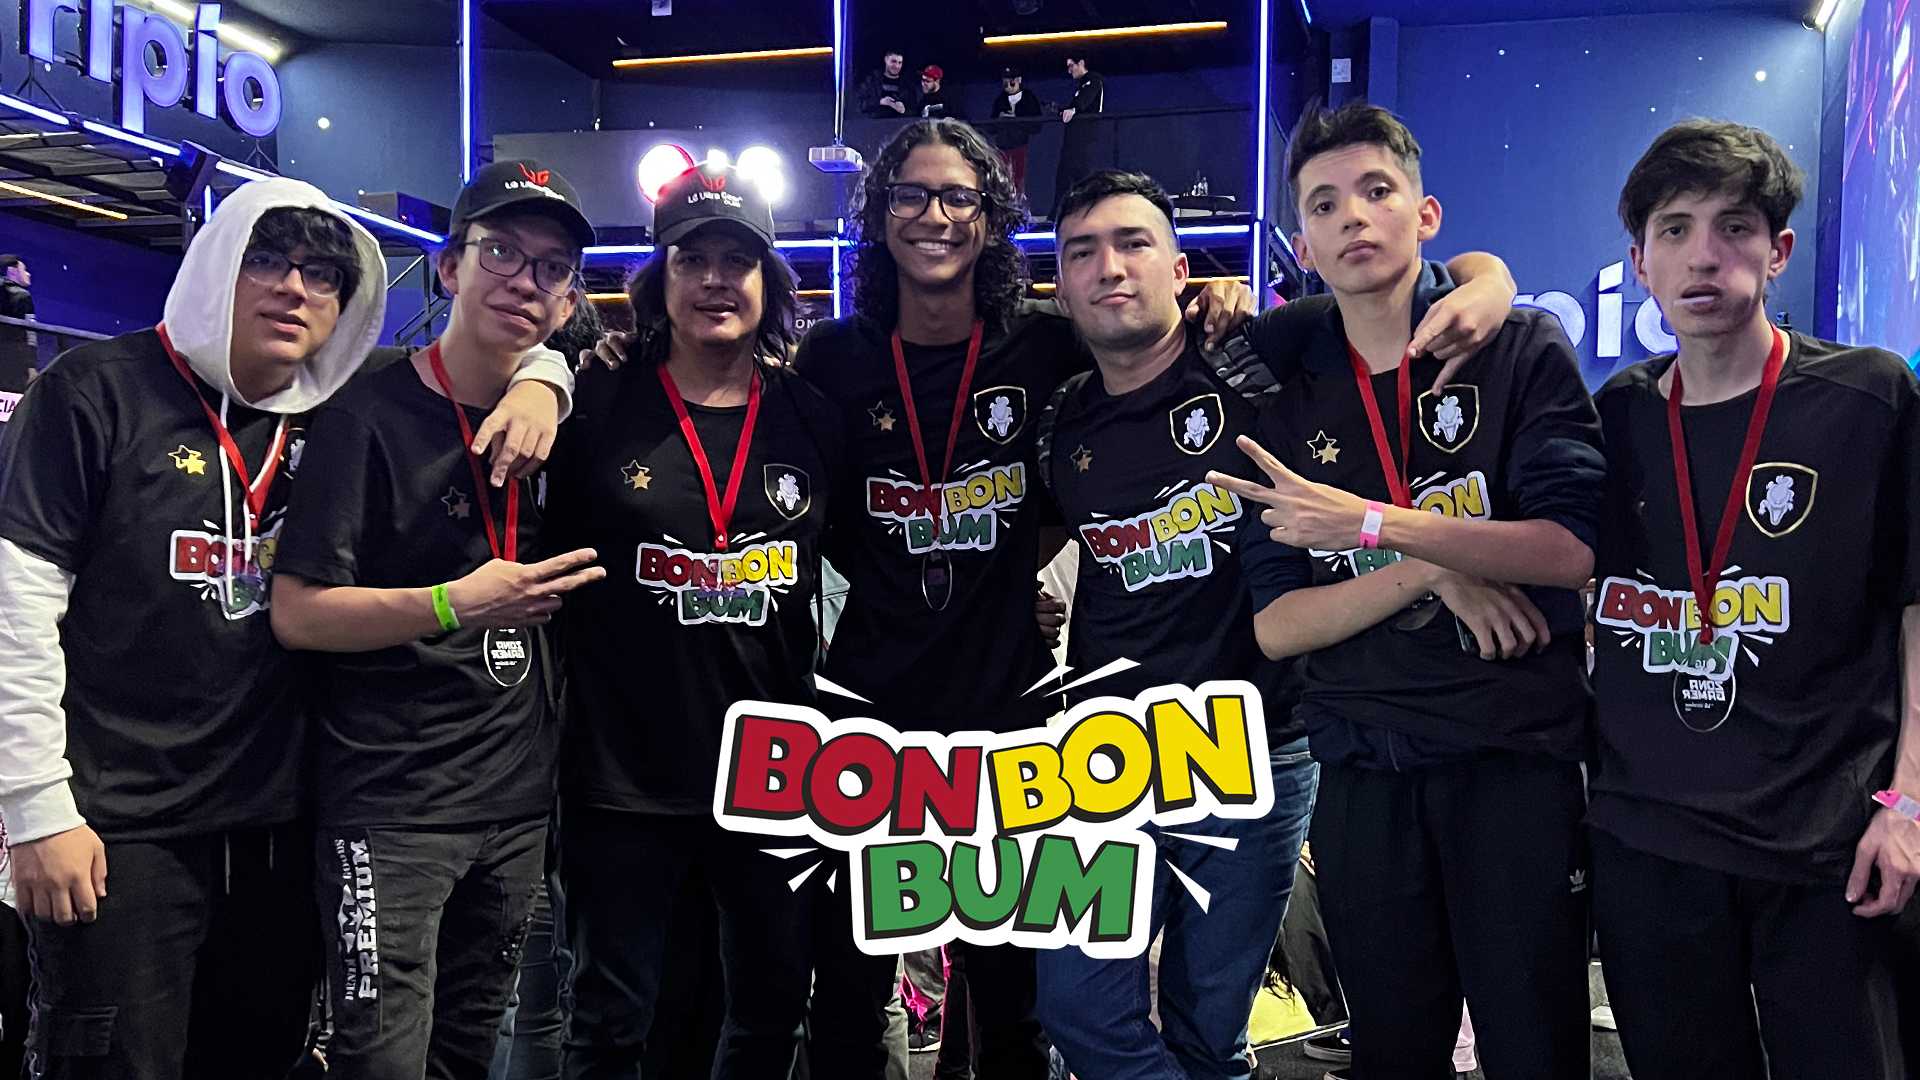 Bon Bon Bum ventures into e-sports with the Contra team